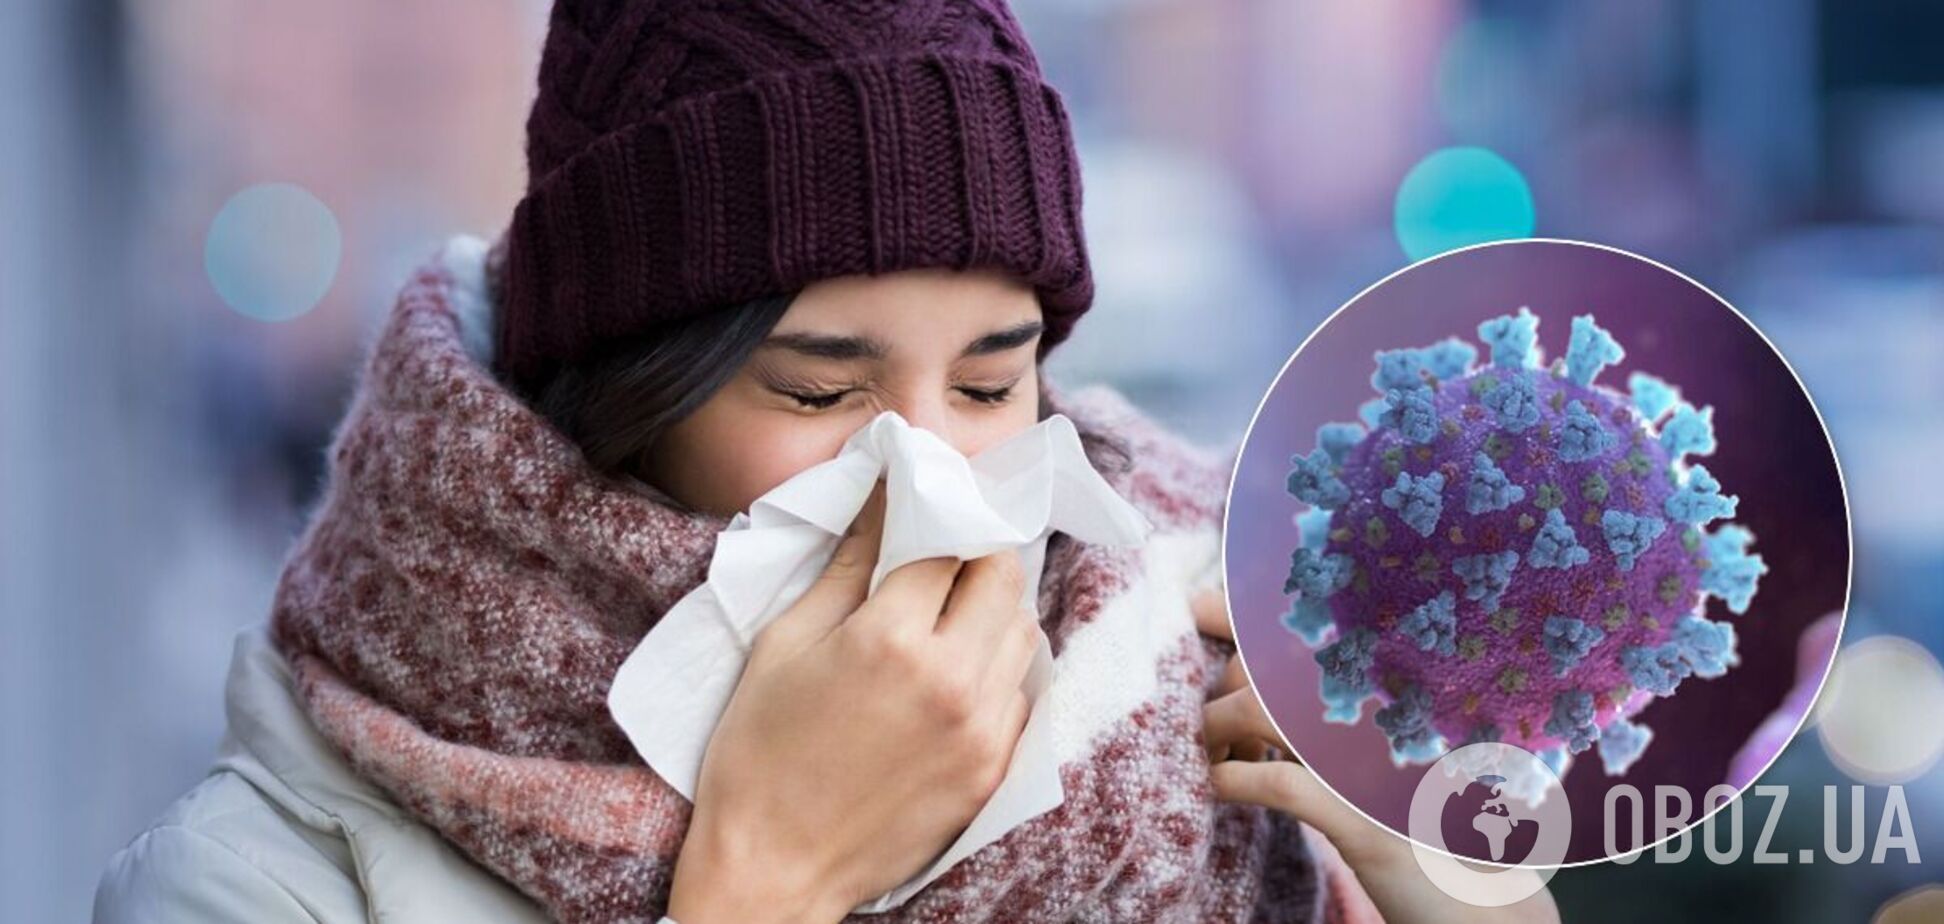 Простуда может помочь предотвратить COVID-19 – эксперты из США